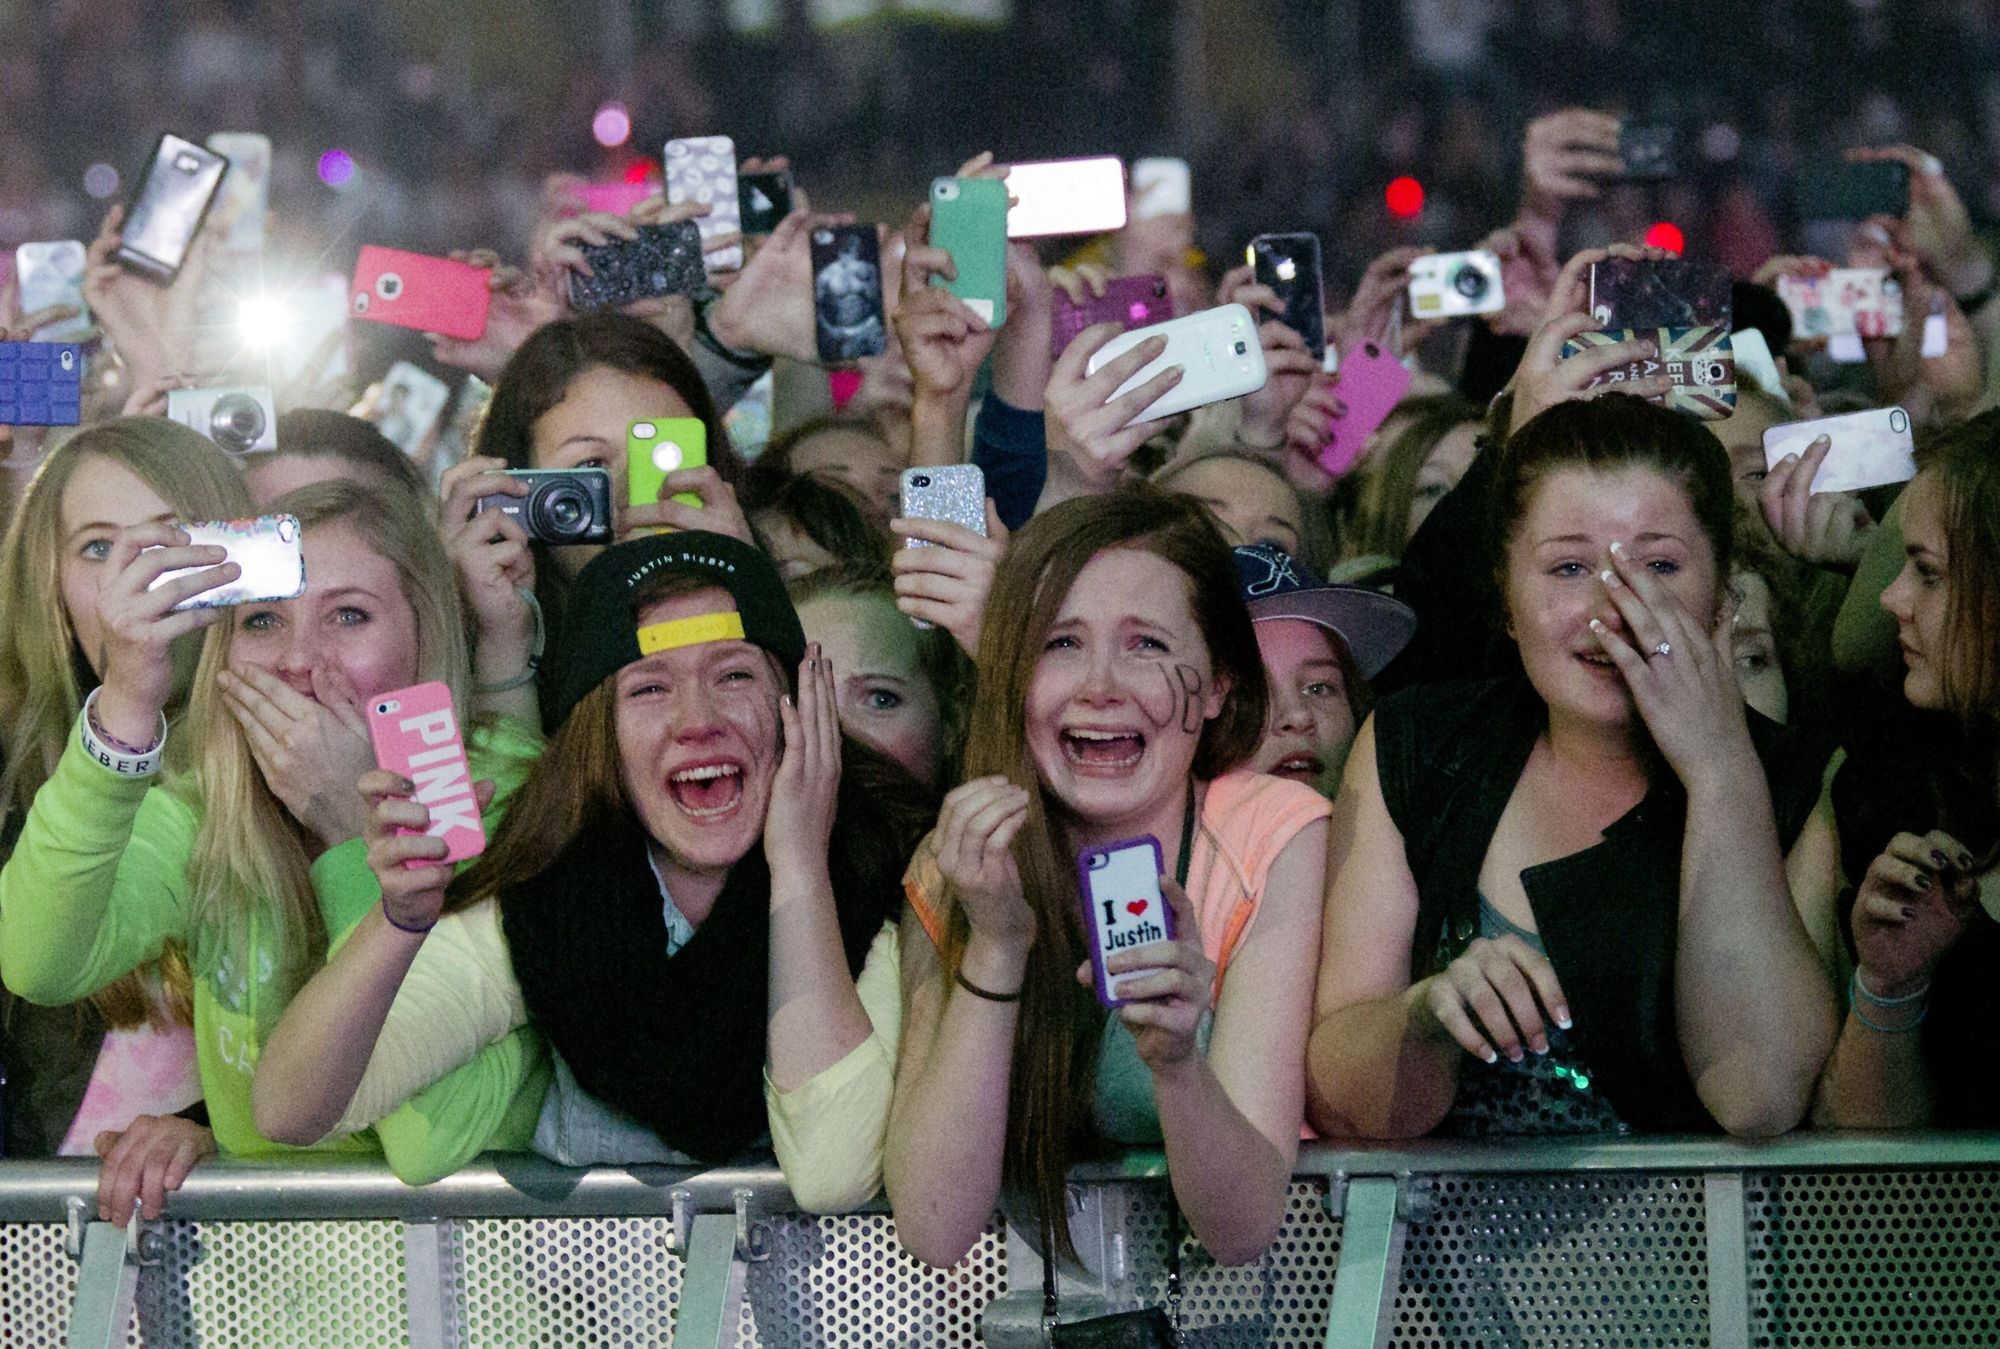 Med tusenvis av smartmobilbrukere på konsert, kan den eventuelle Wi-Fi-kapasiteten fort bli sprengt. Bildet er fra en Justin Bieber-konsert i Telenor Arena tidligere i år.